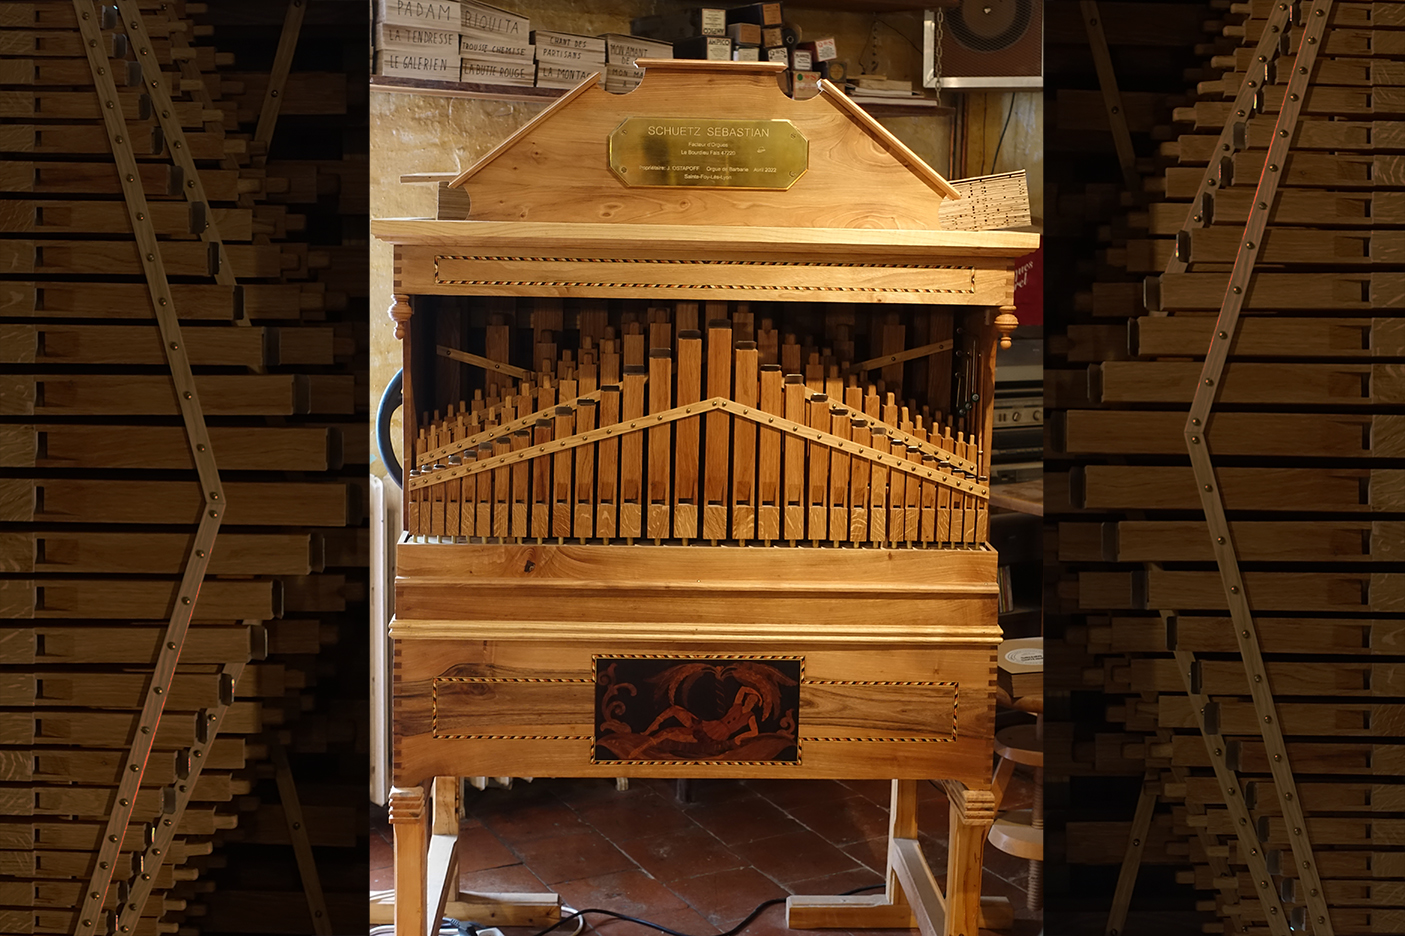 Radiobastides - La nef des fous L'inventeur d’orgues de barbarie